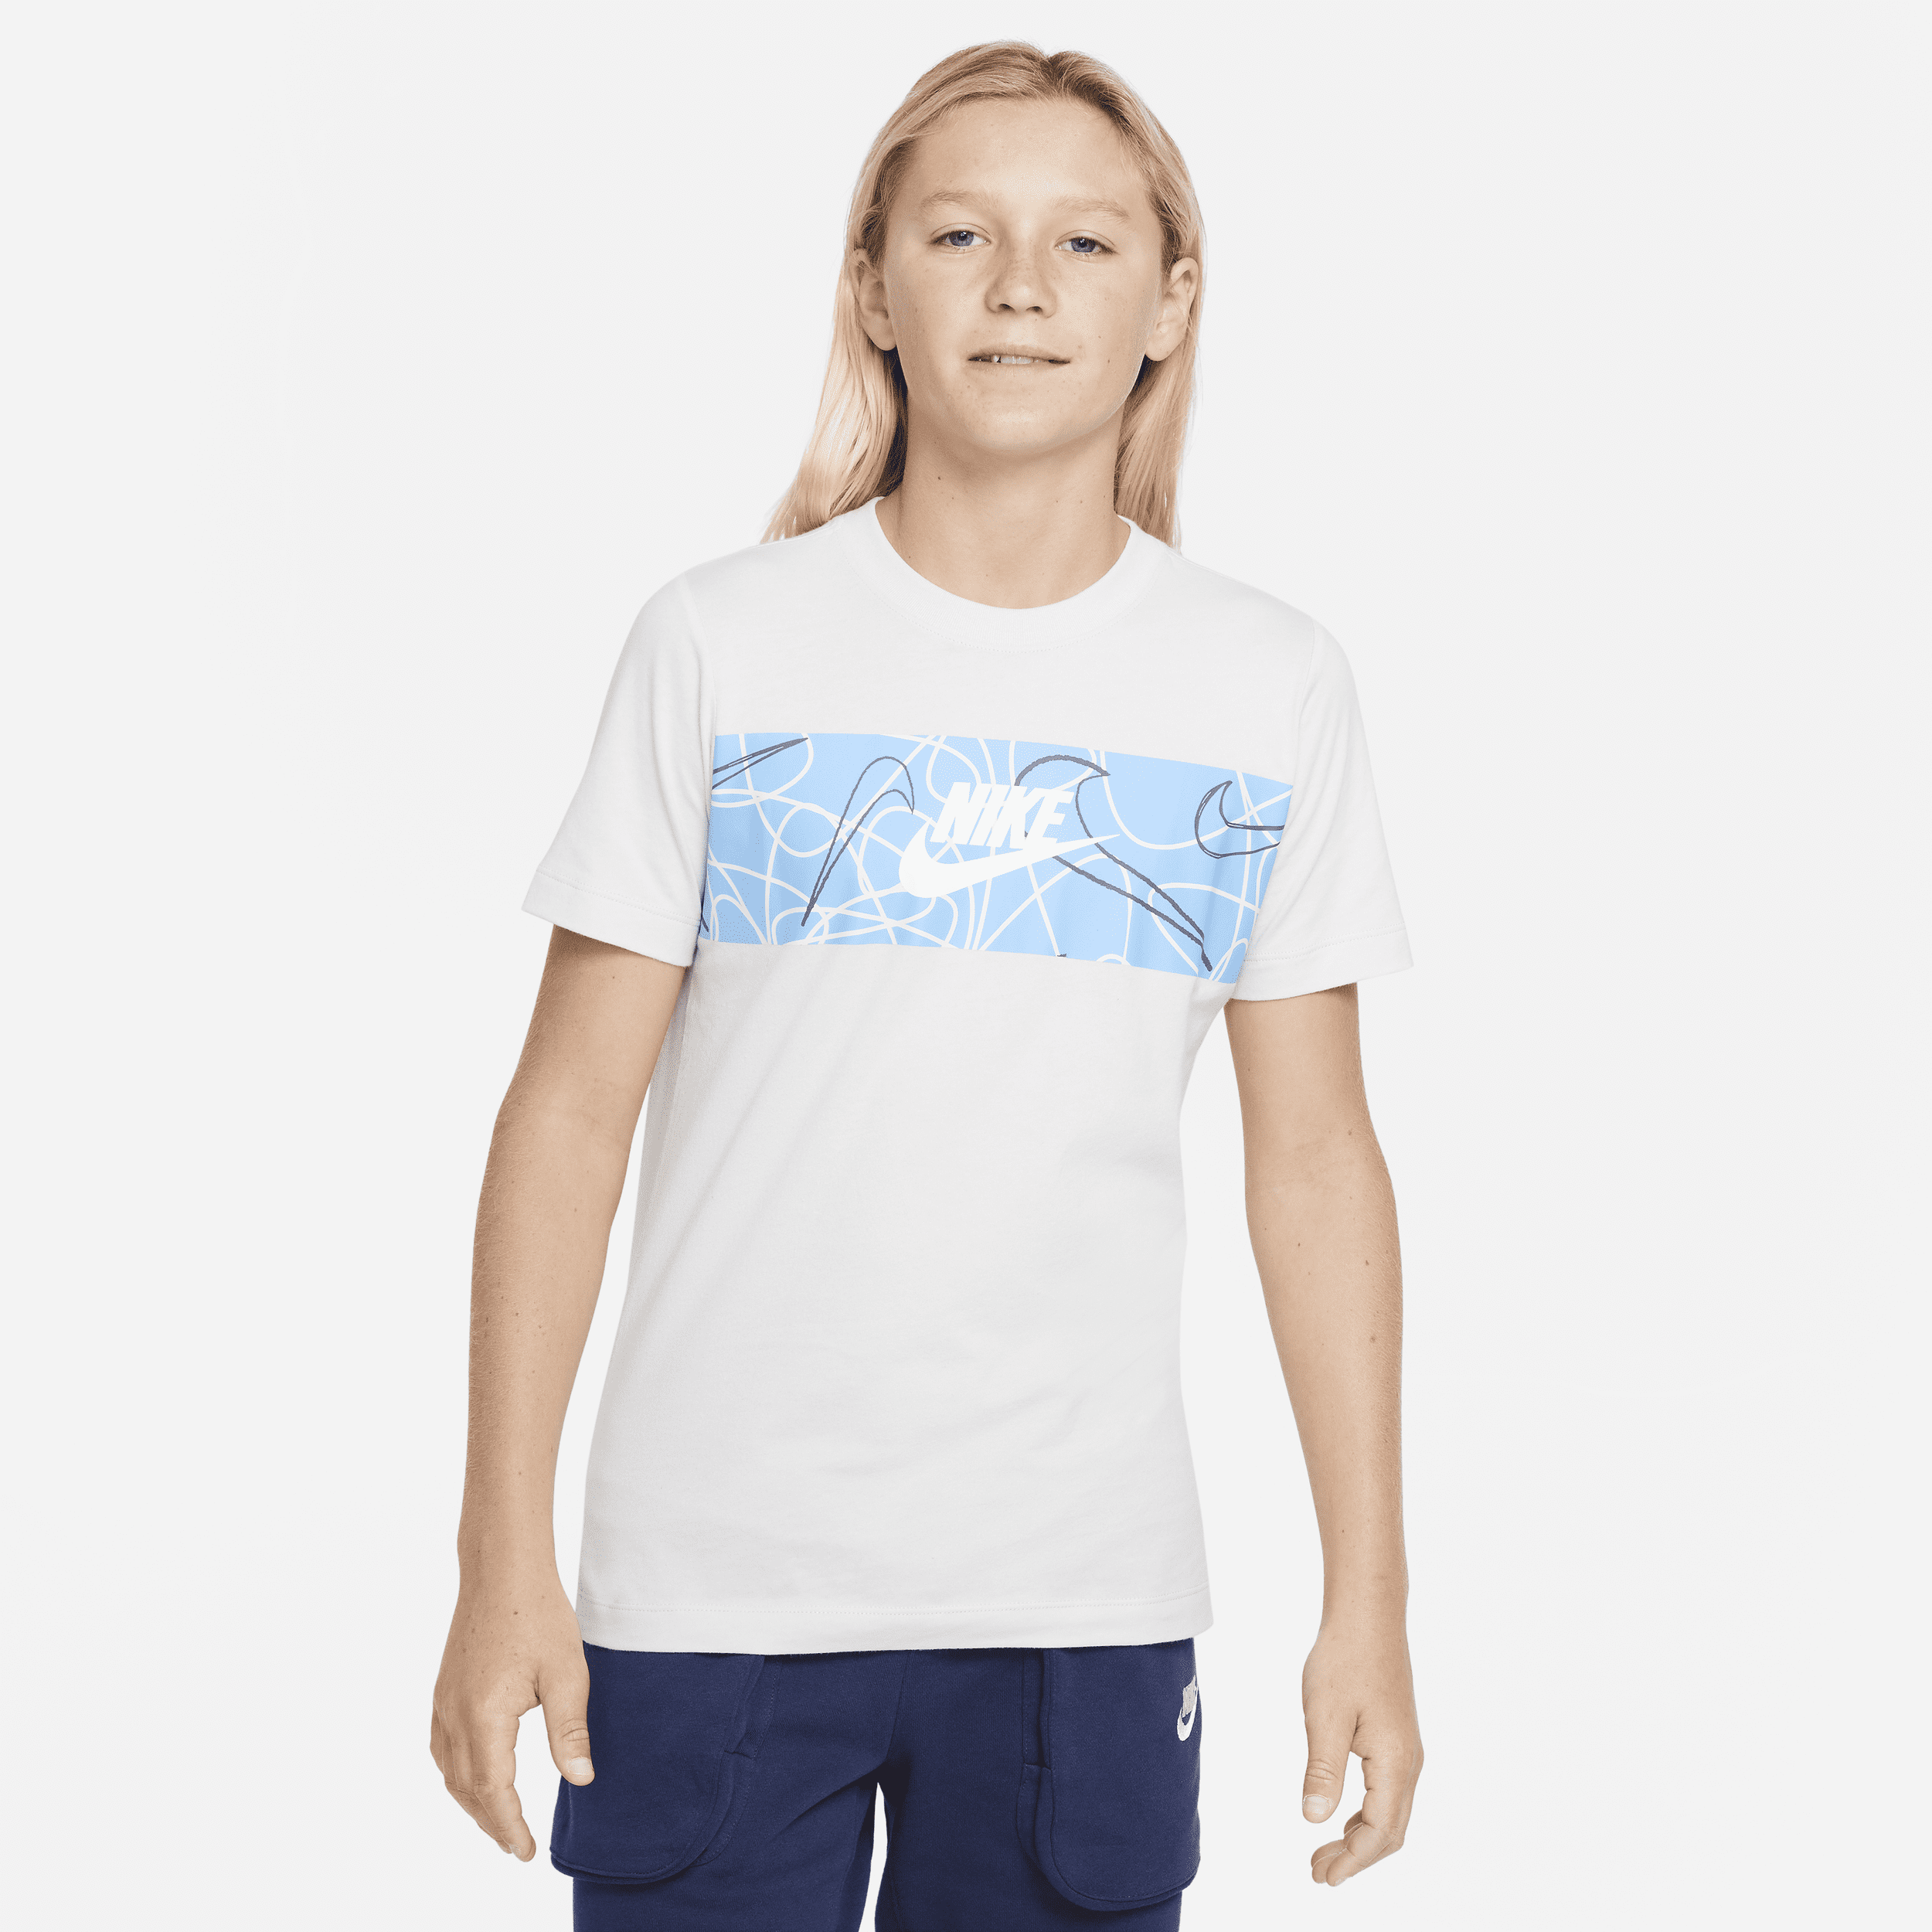 Nike Sportswear T-shirt voor jongens - Grijs